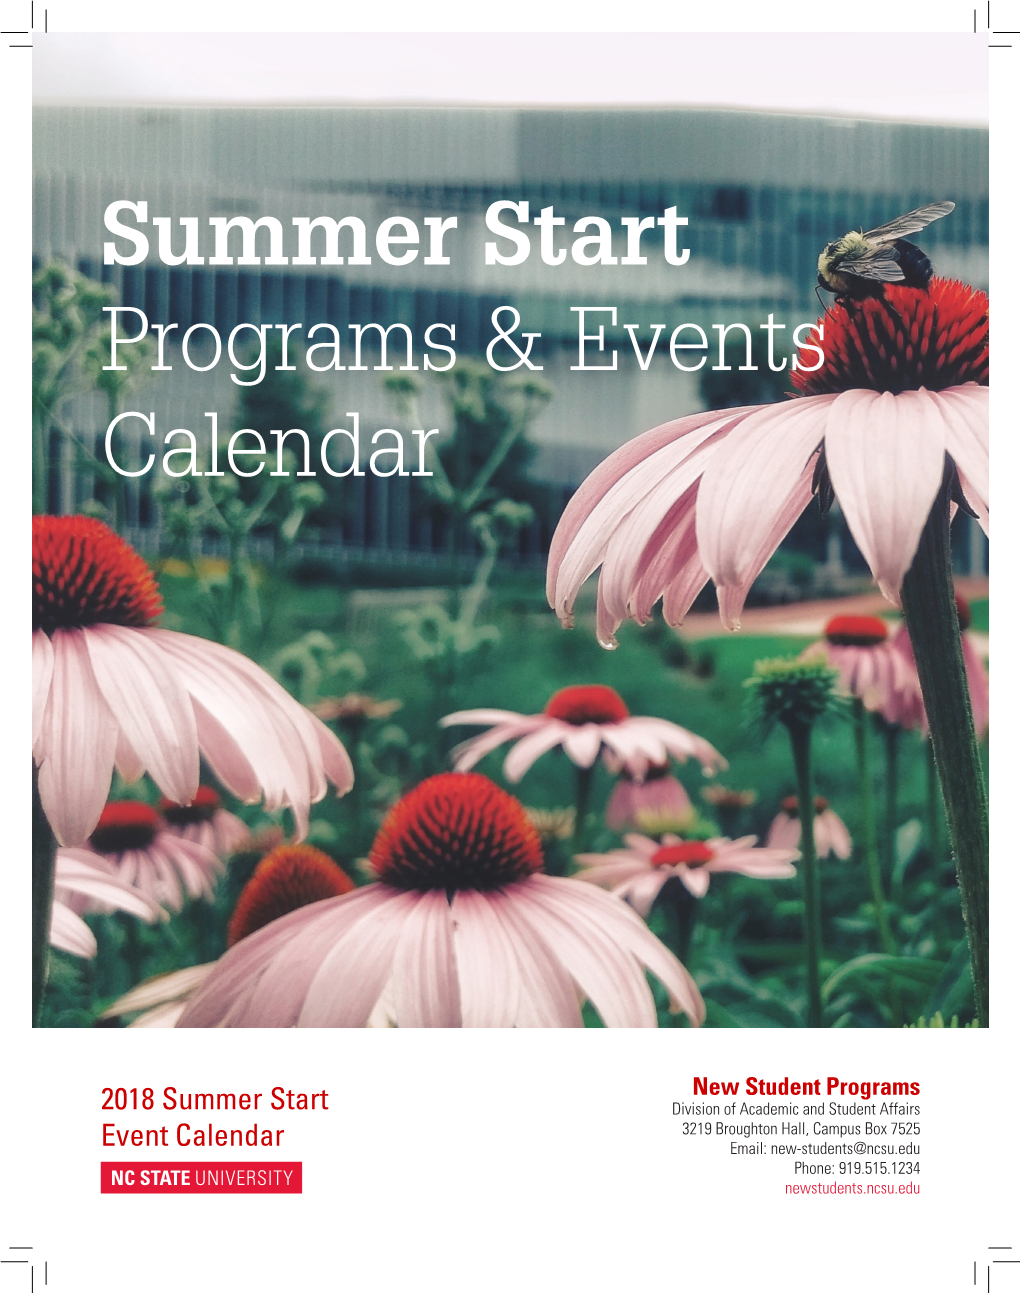 Summer Start Programs & Events Calendar